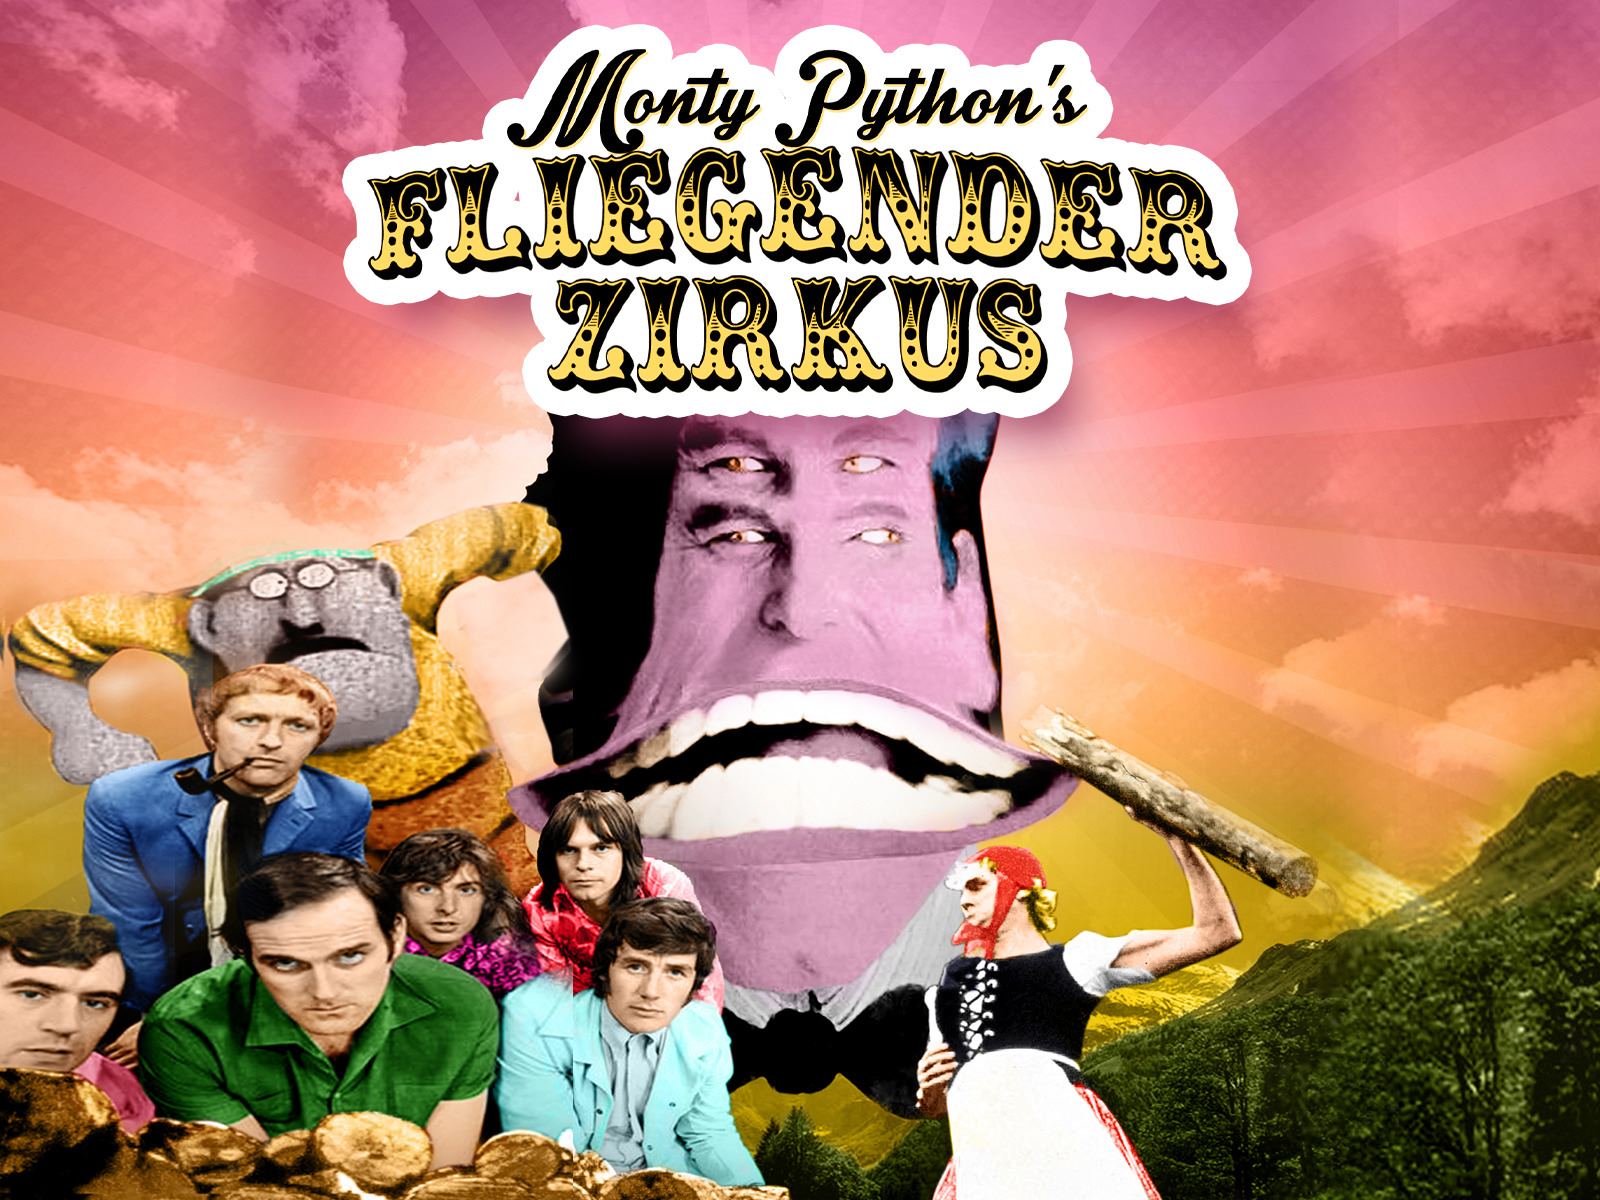 35-facts-about-the-movie-monty-pythons-fliegender-zirkus